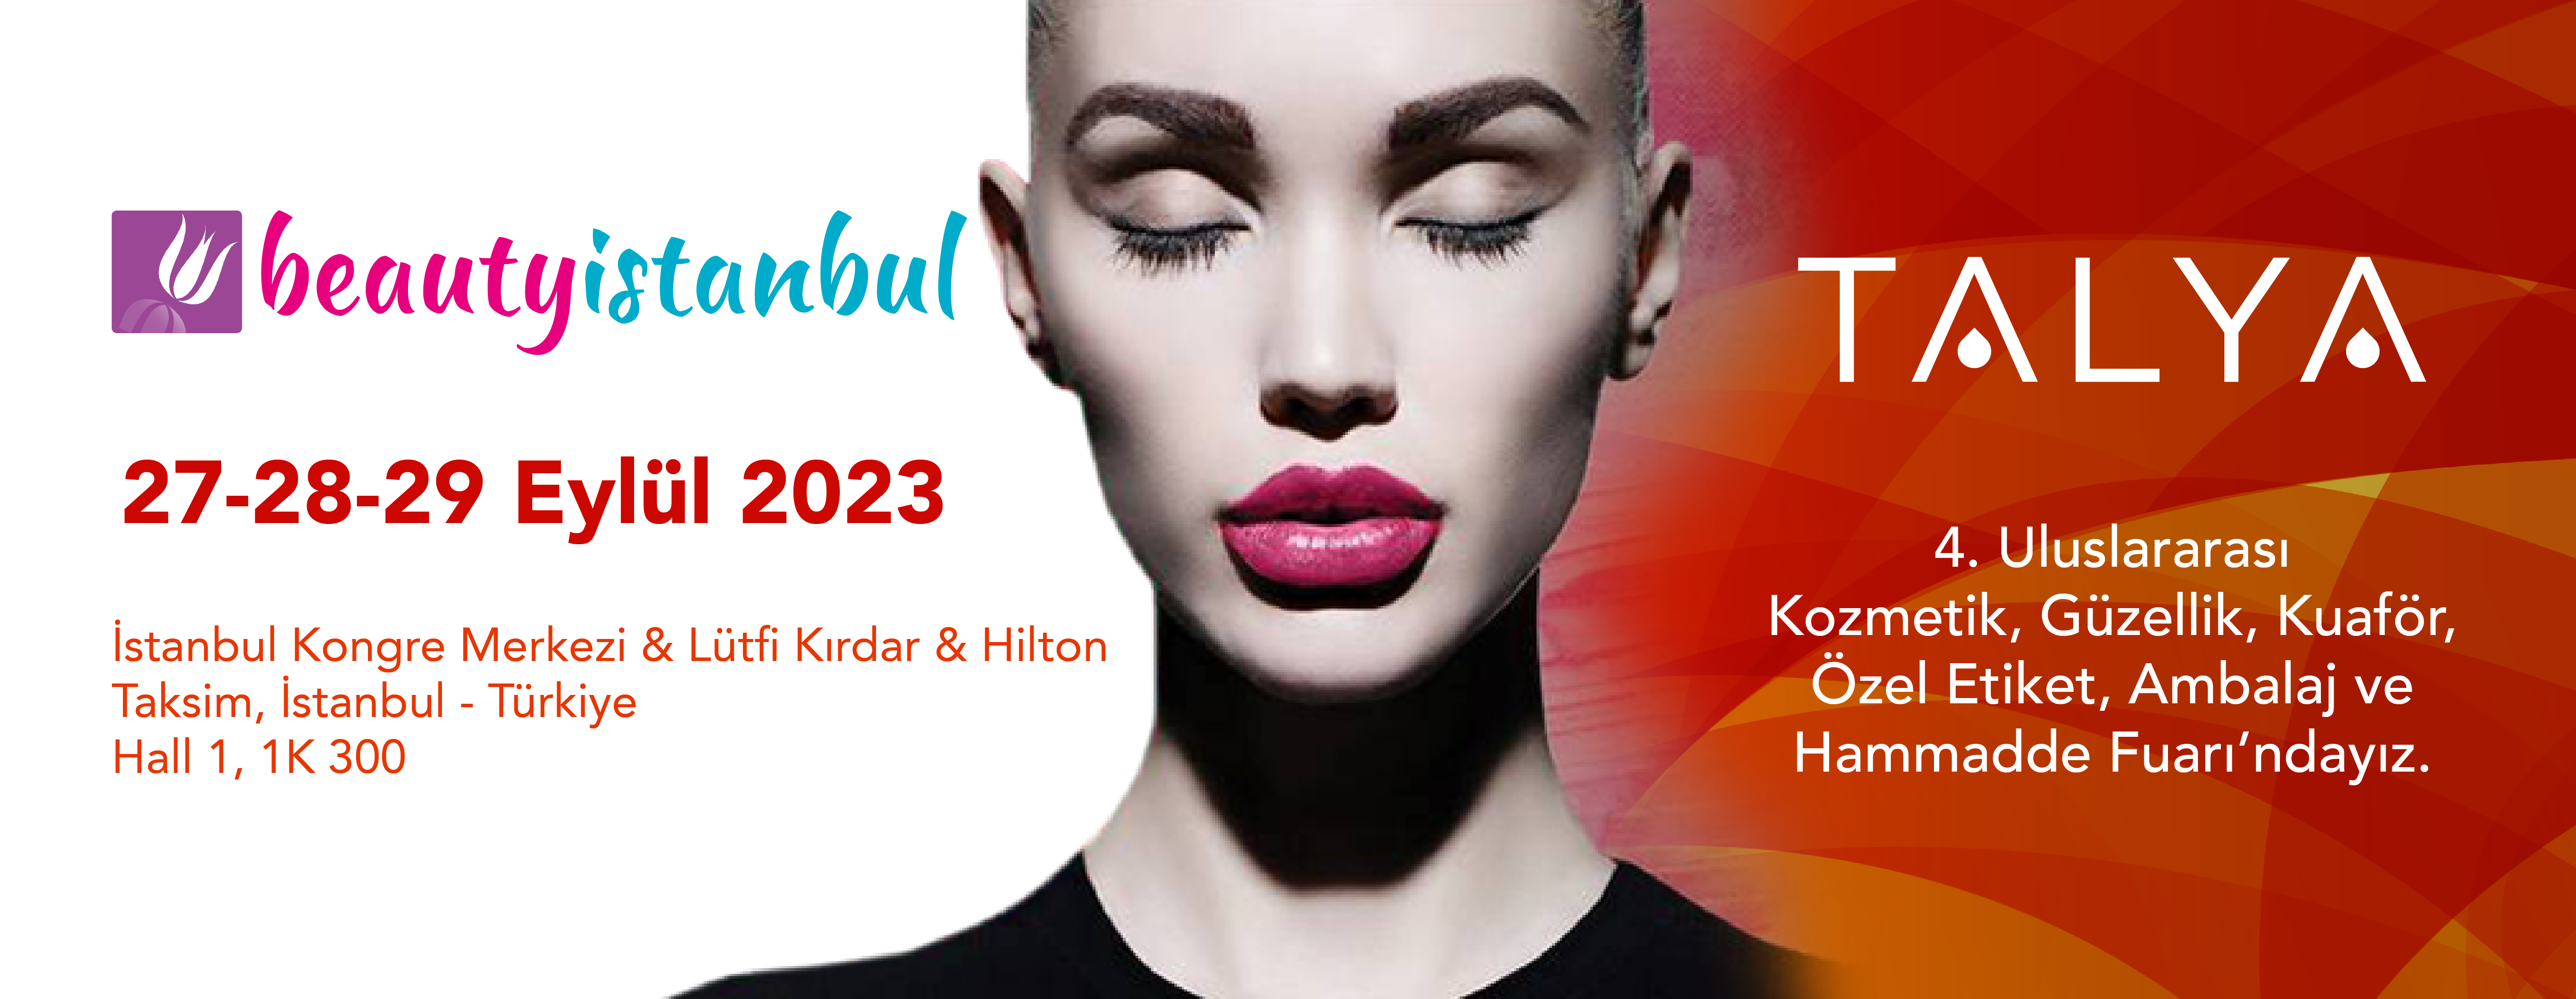 Beauty İstanbul 2023'e Katılıyoruz